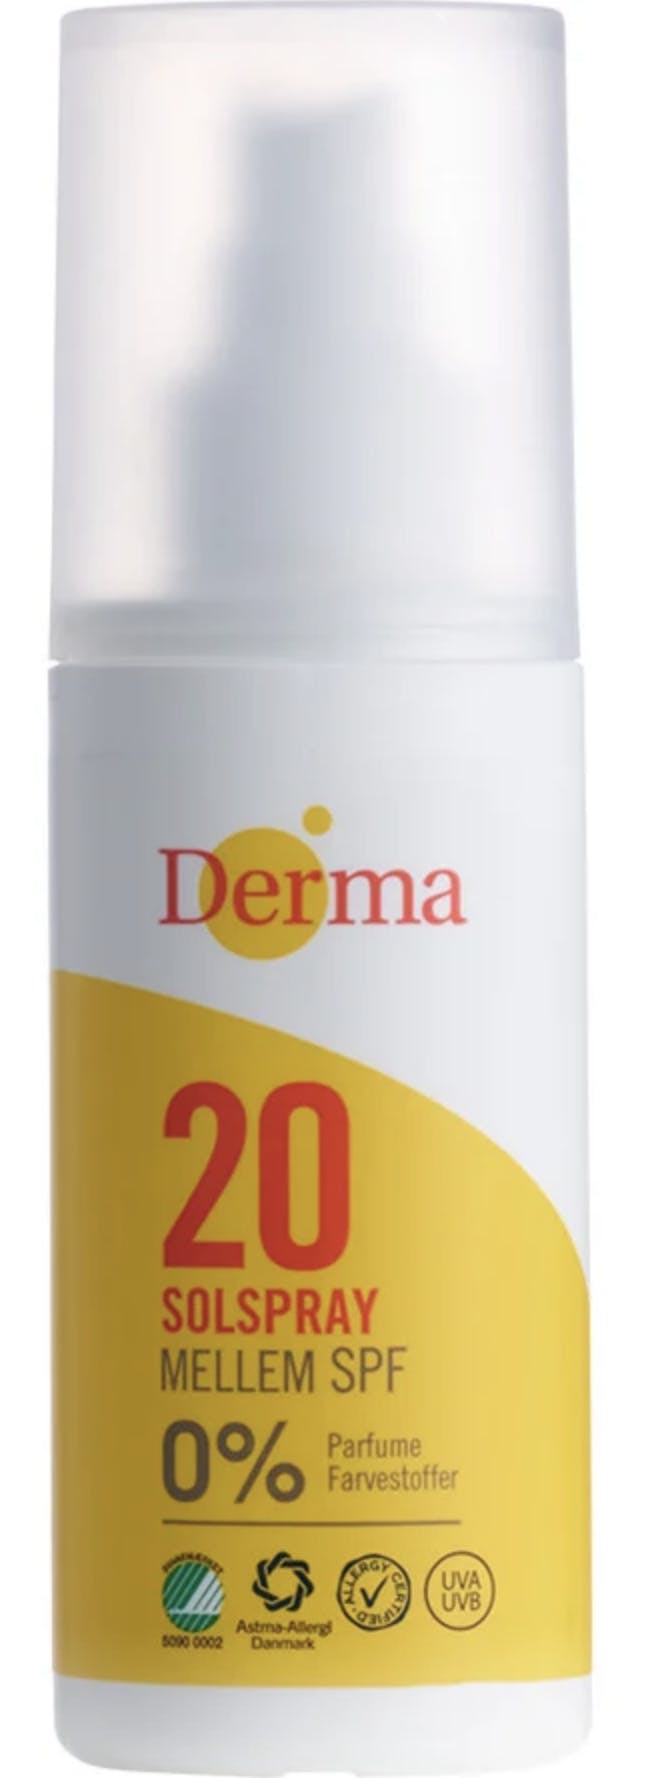 Derma Sun Sunspray SPF 20 150 ml